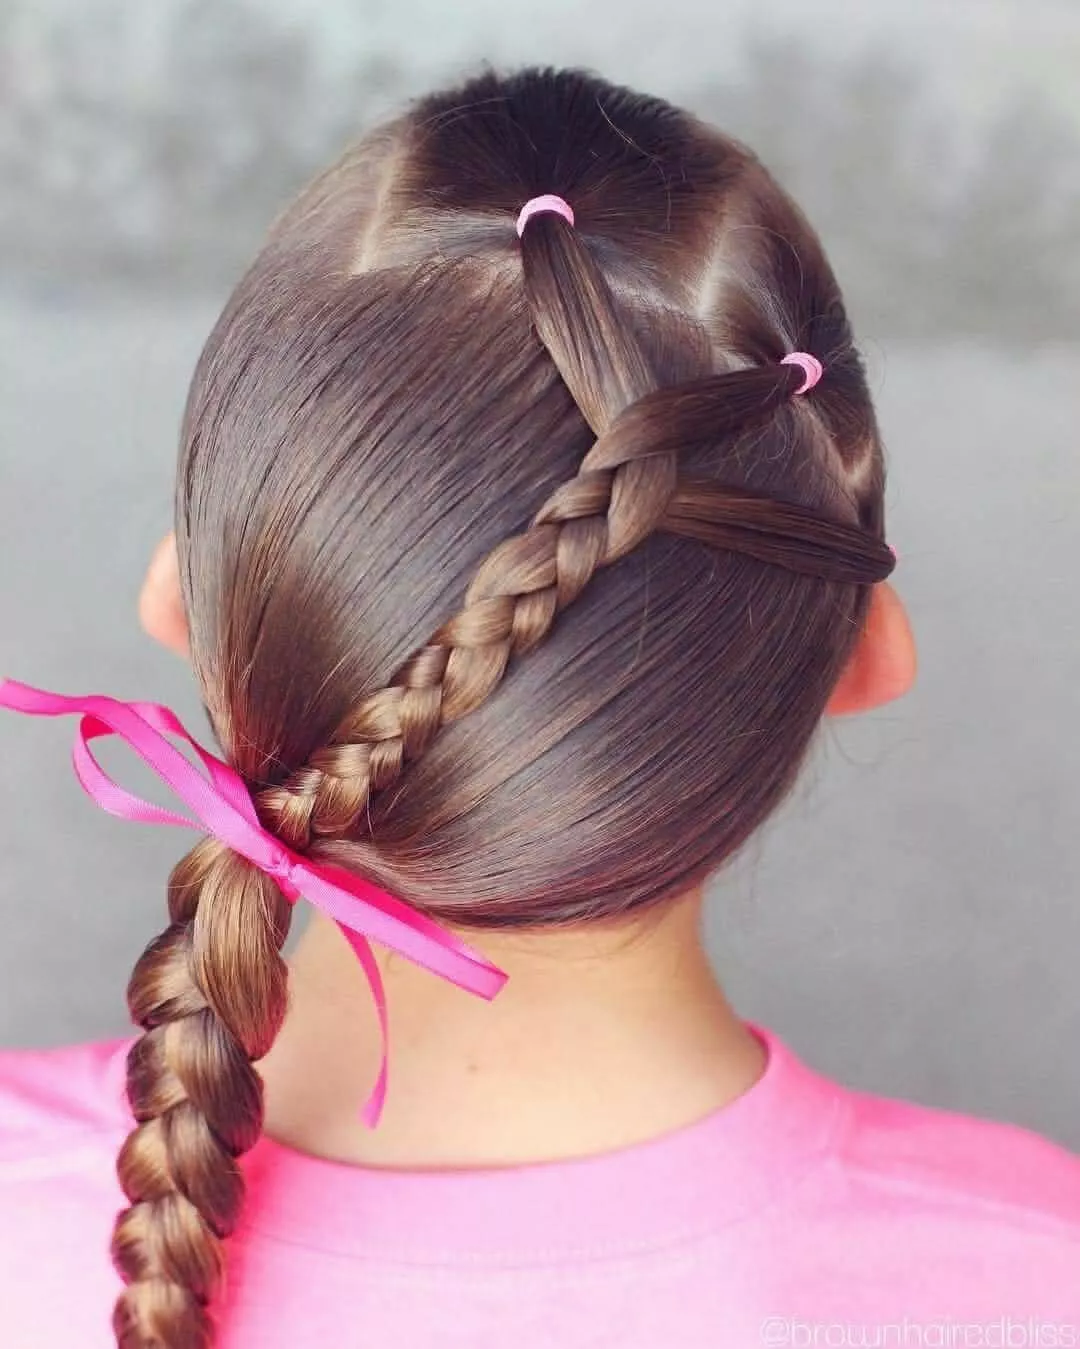 Confira ideia de penteado infantil com trança | Ponto da Mulher